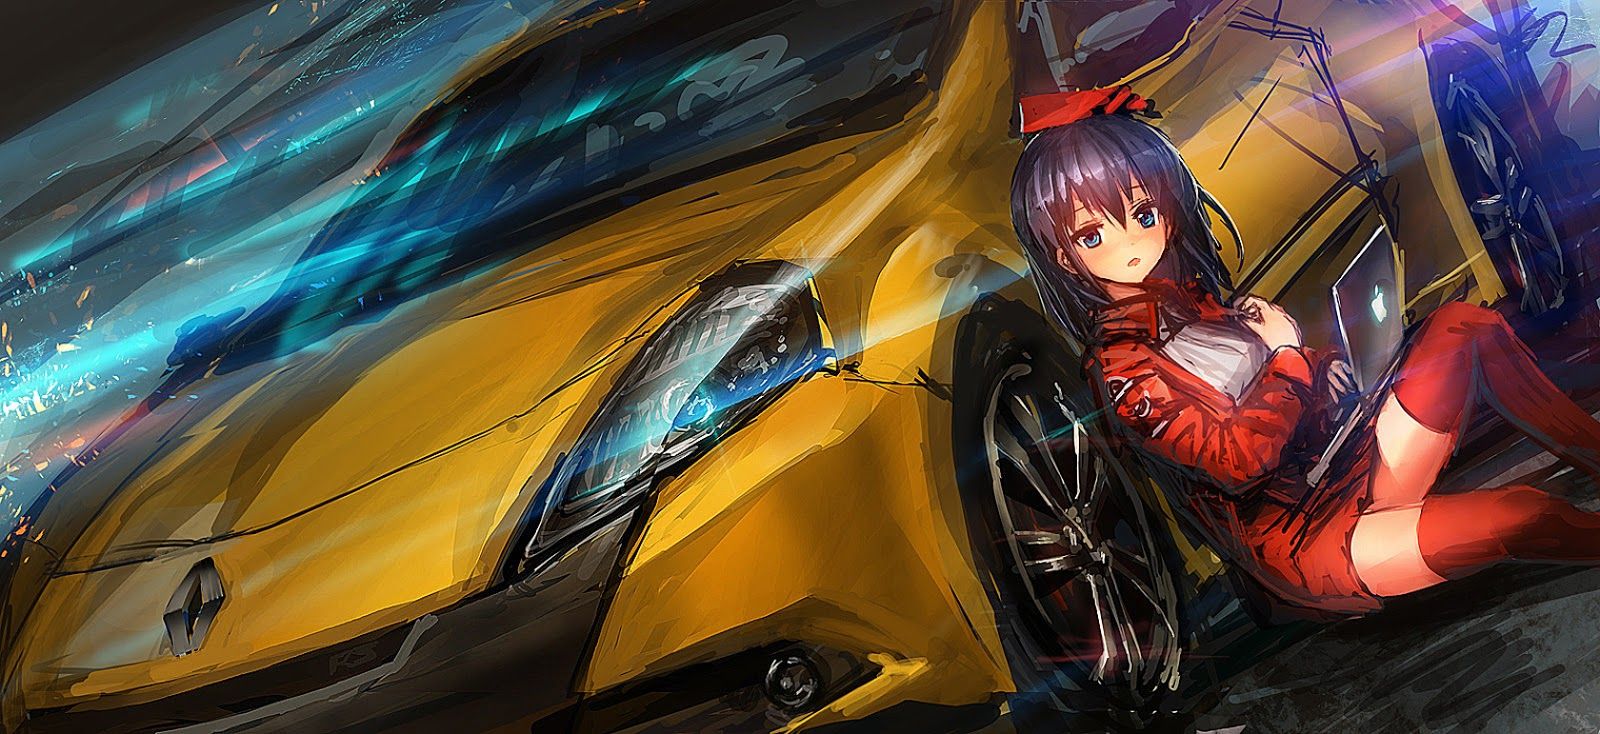 [50+] Anime Cars Desktop Wallpapers - WallpaperSafari